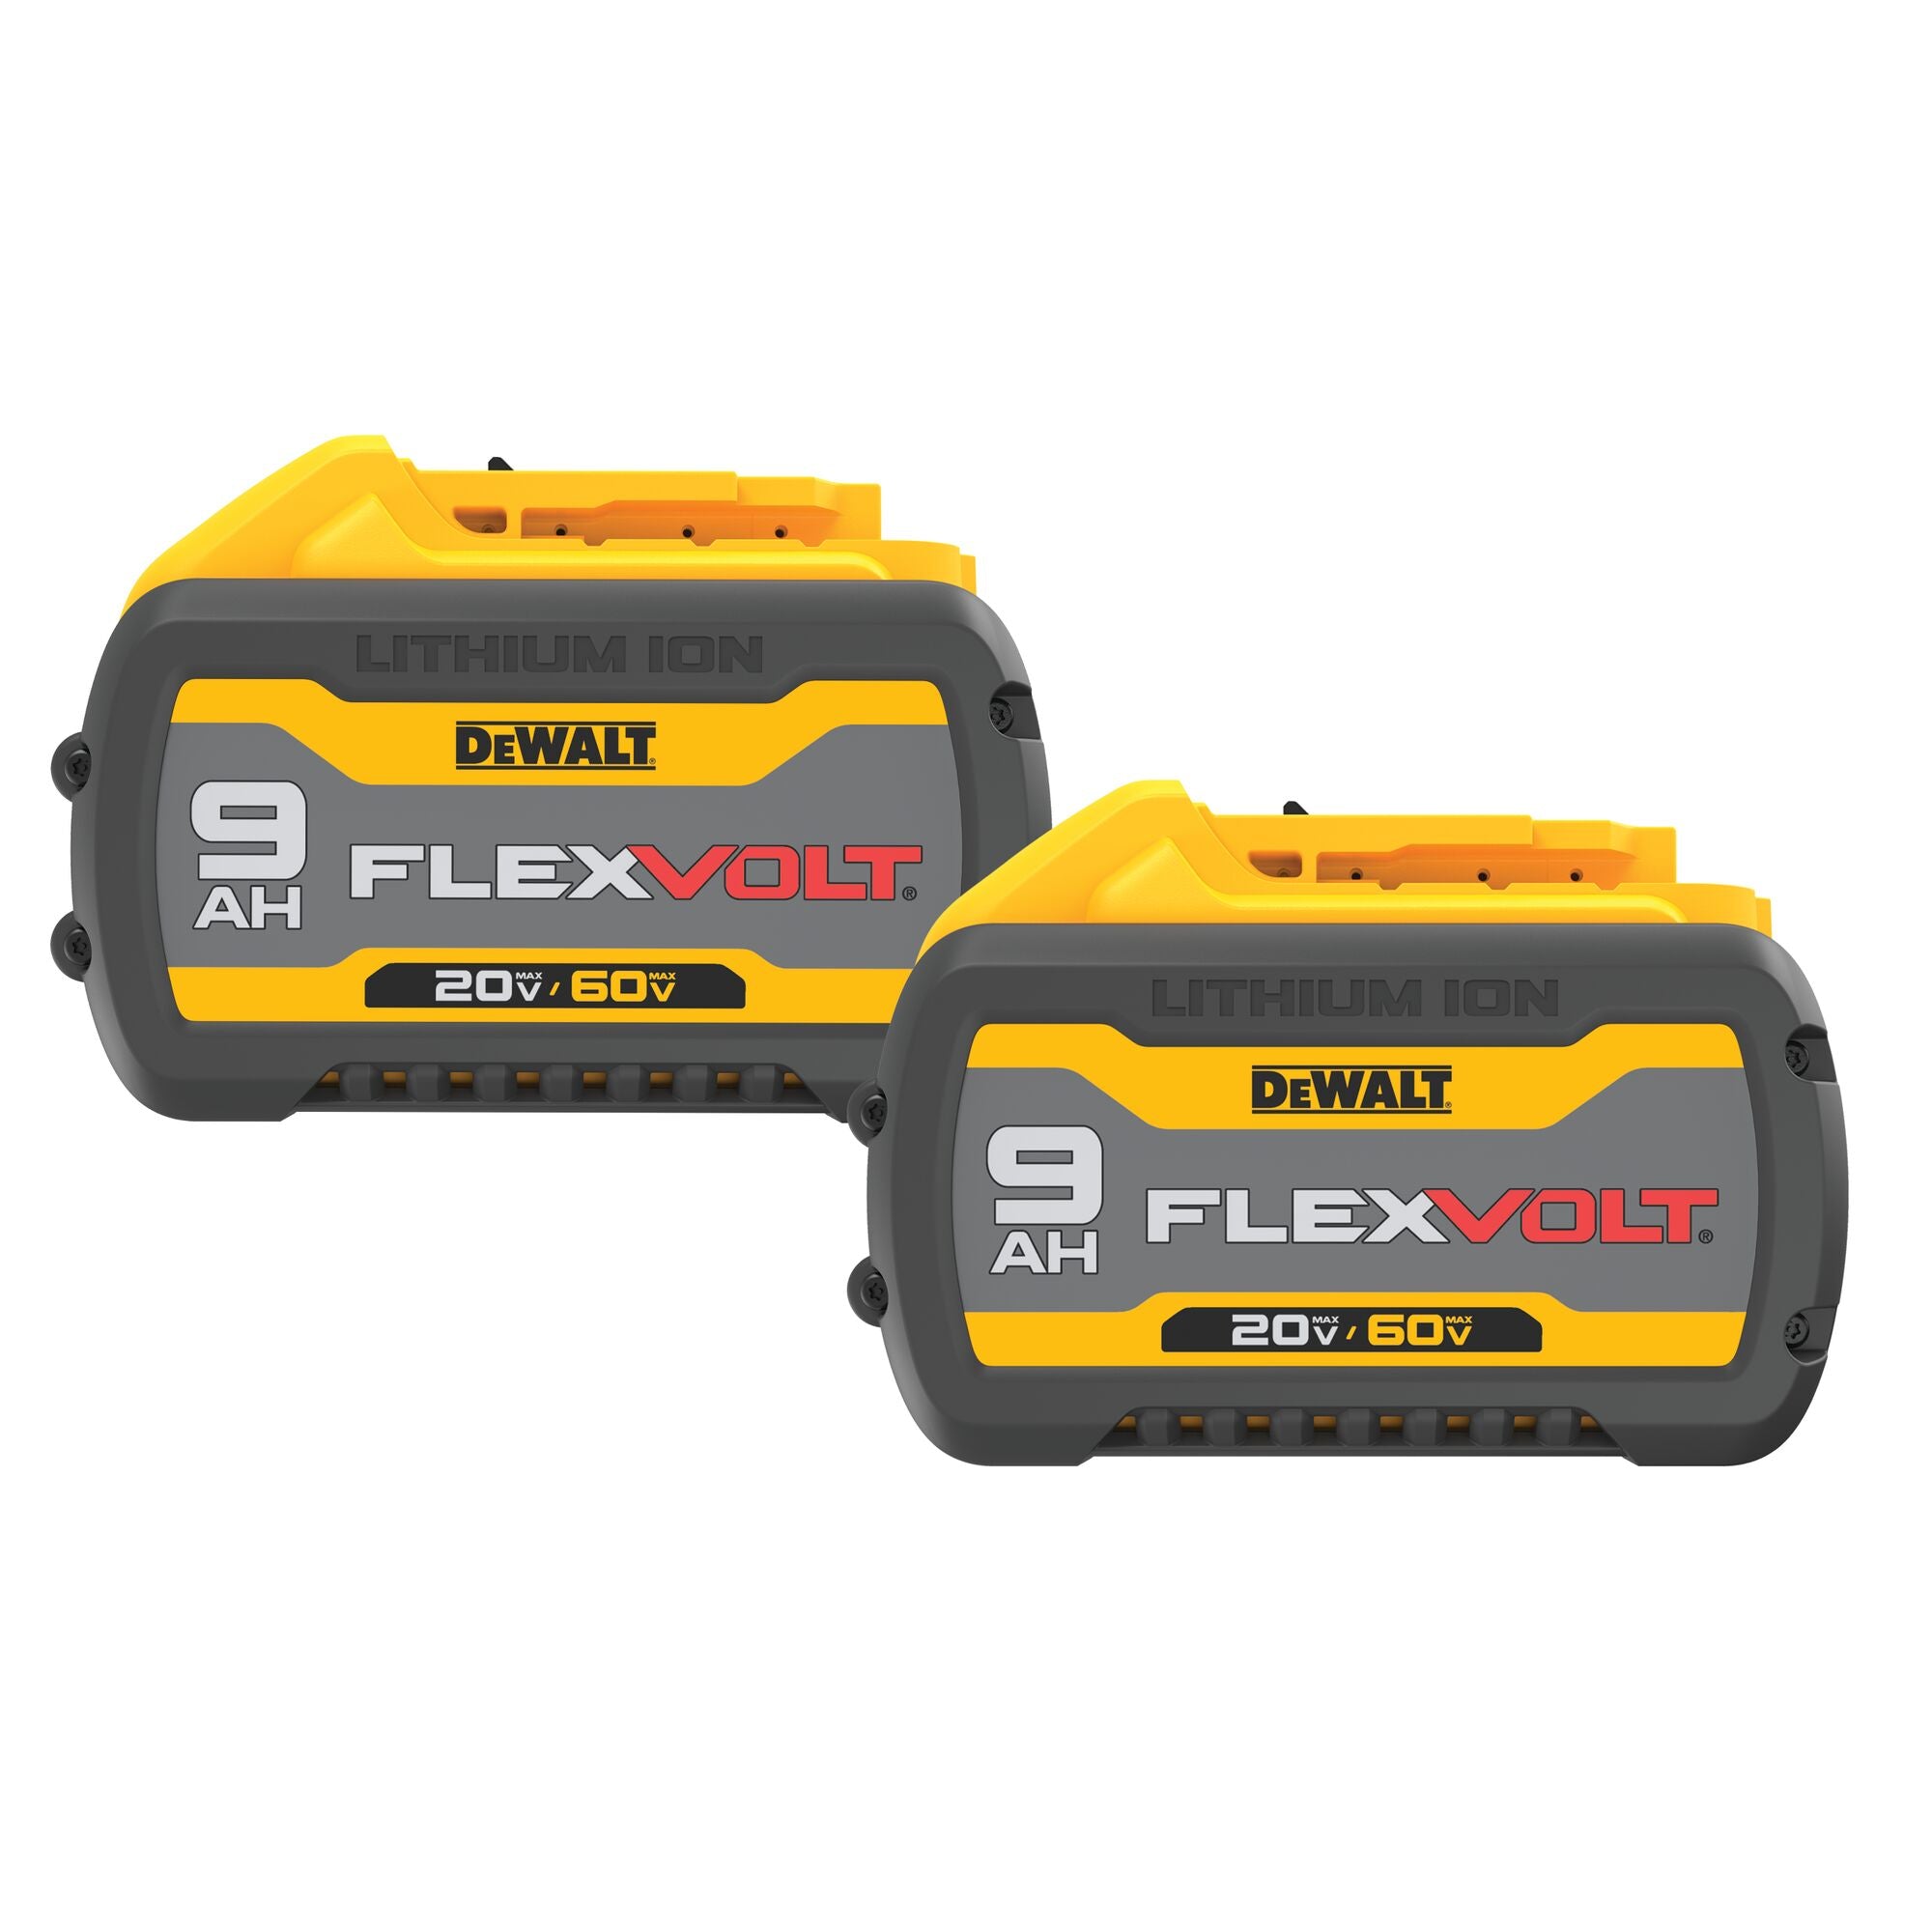 60 Volt /20 Volt 9 aH Flex Volt Dual DeWALT Battery Pack